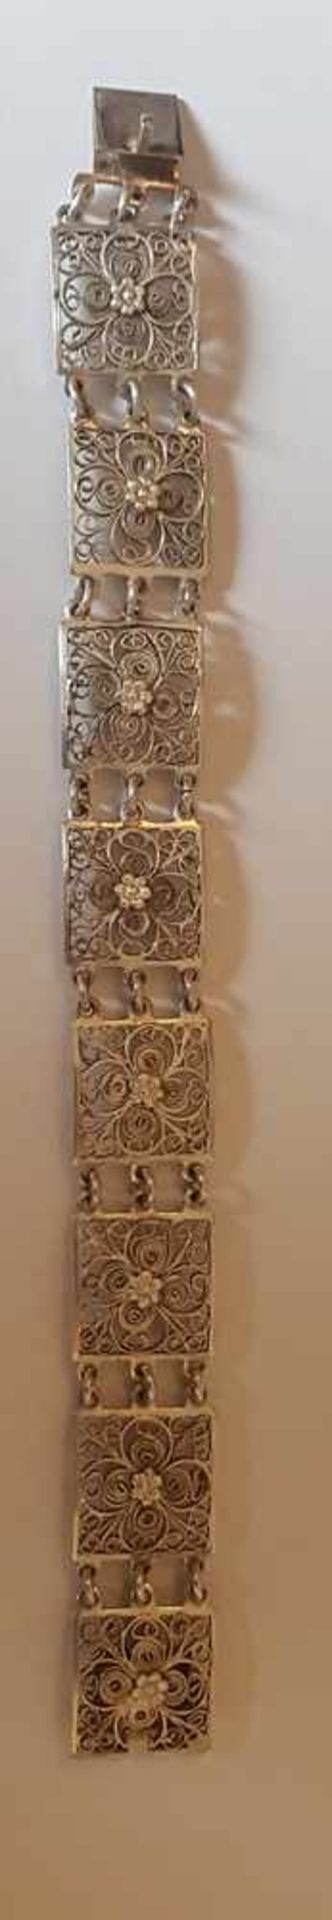 Armkette, Silber 800 , Länge 19cm , Filigranierarbeit, Steckschließe , 20,7g , - Bild 3 aus 3